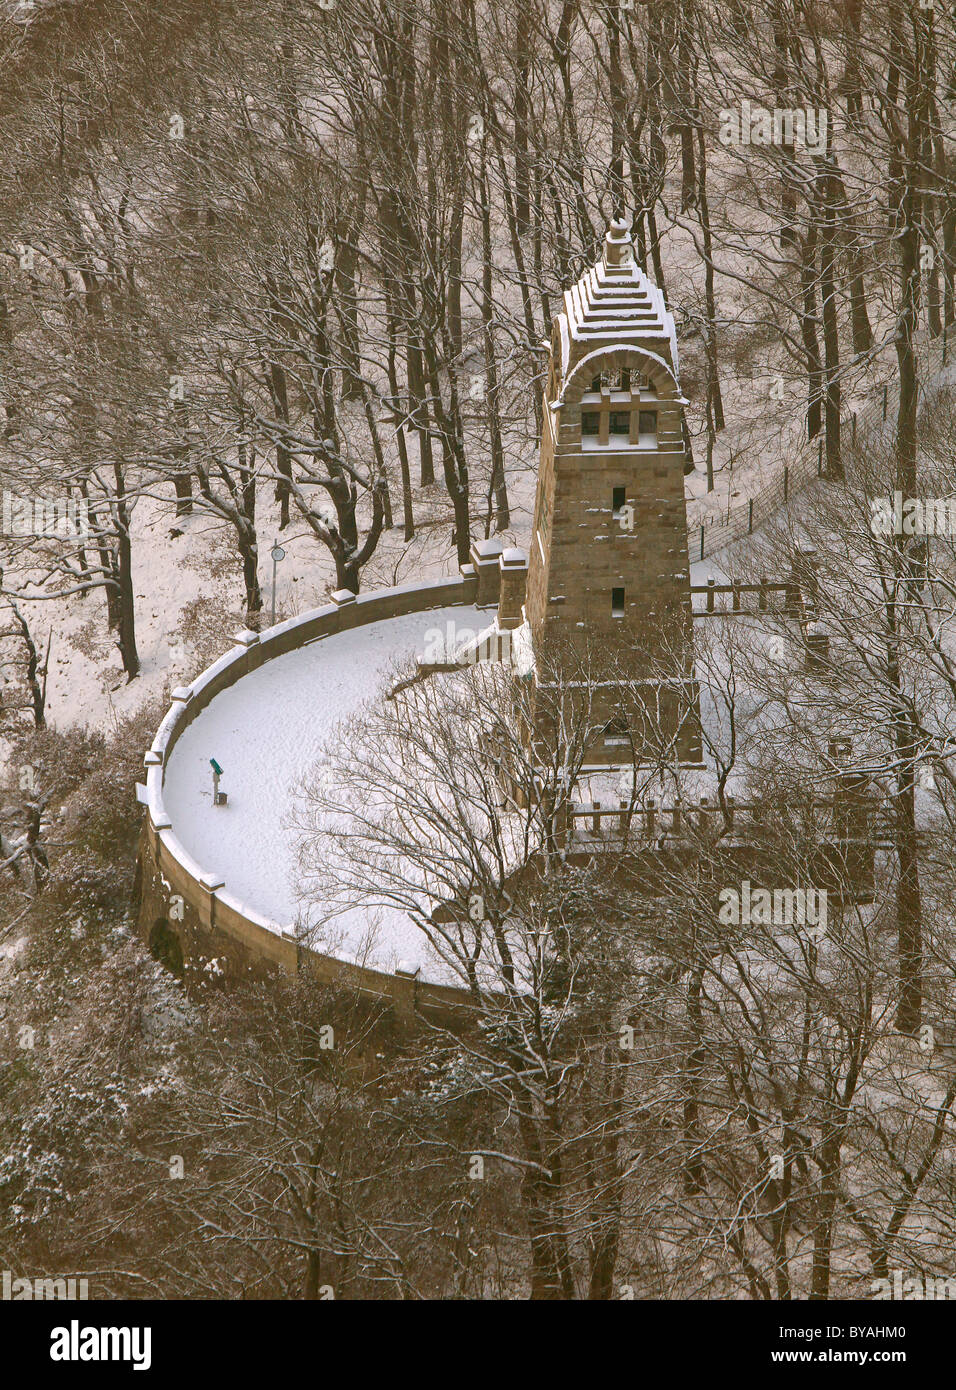 Vista aerea, Berger memorial ricoperta di neve Hohenstein, Stadtpark, il parco della città, la torre di osservazione, fiume Ruhr valley, Witten Foto Stock